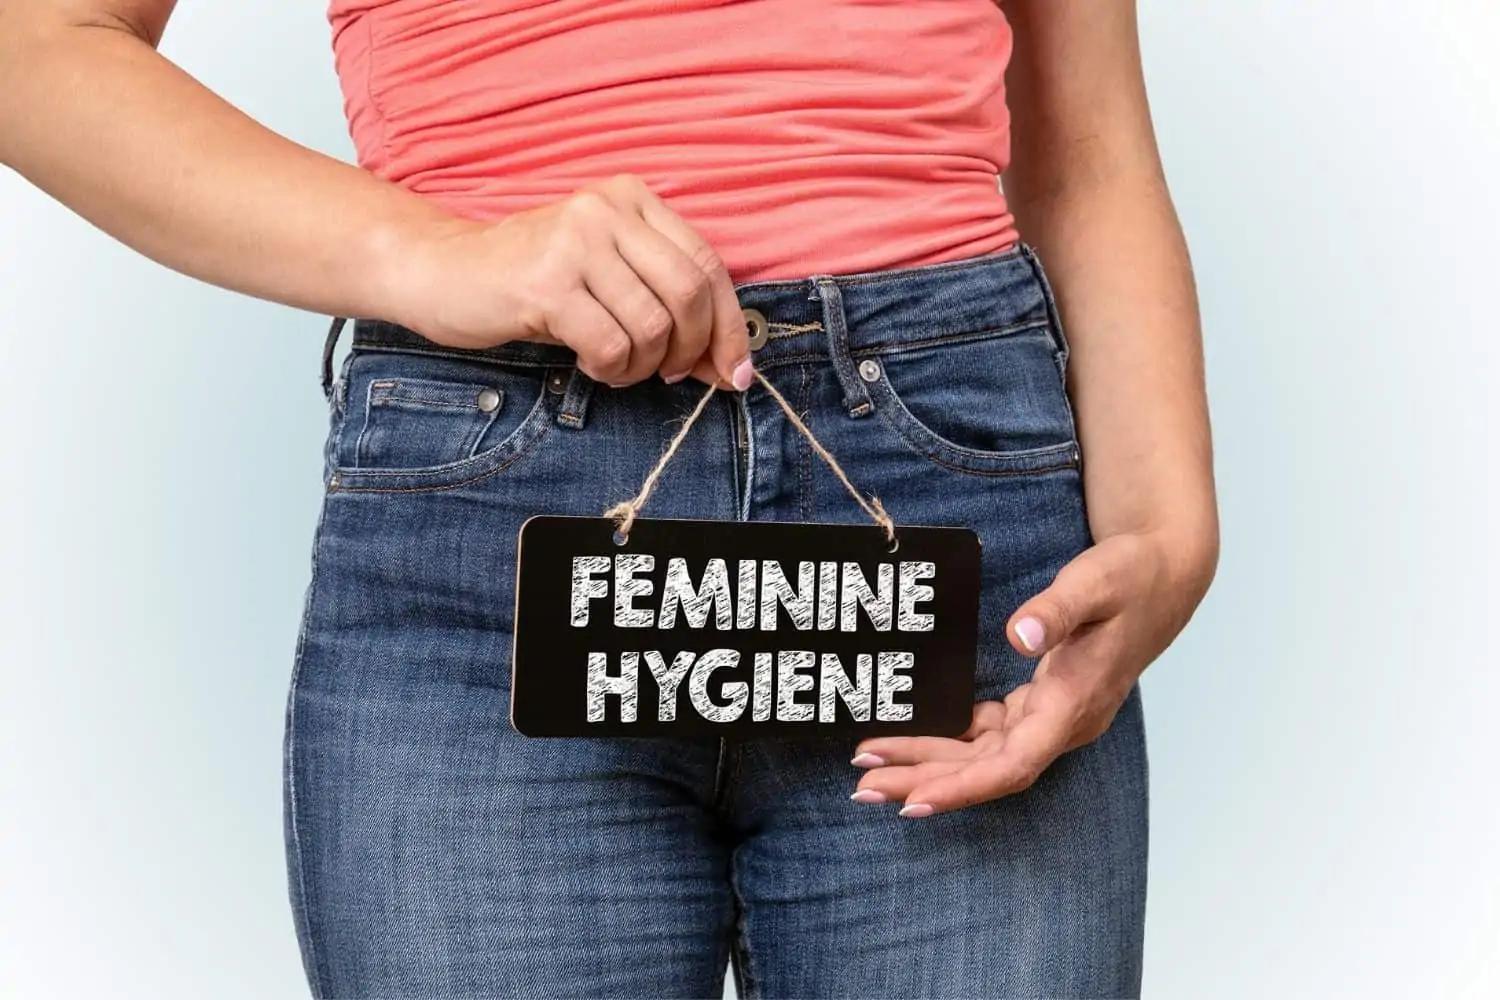 Female hygiene